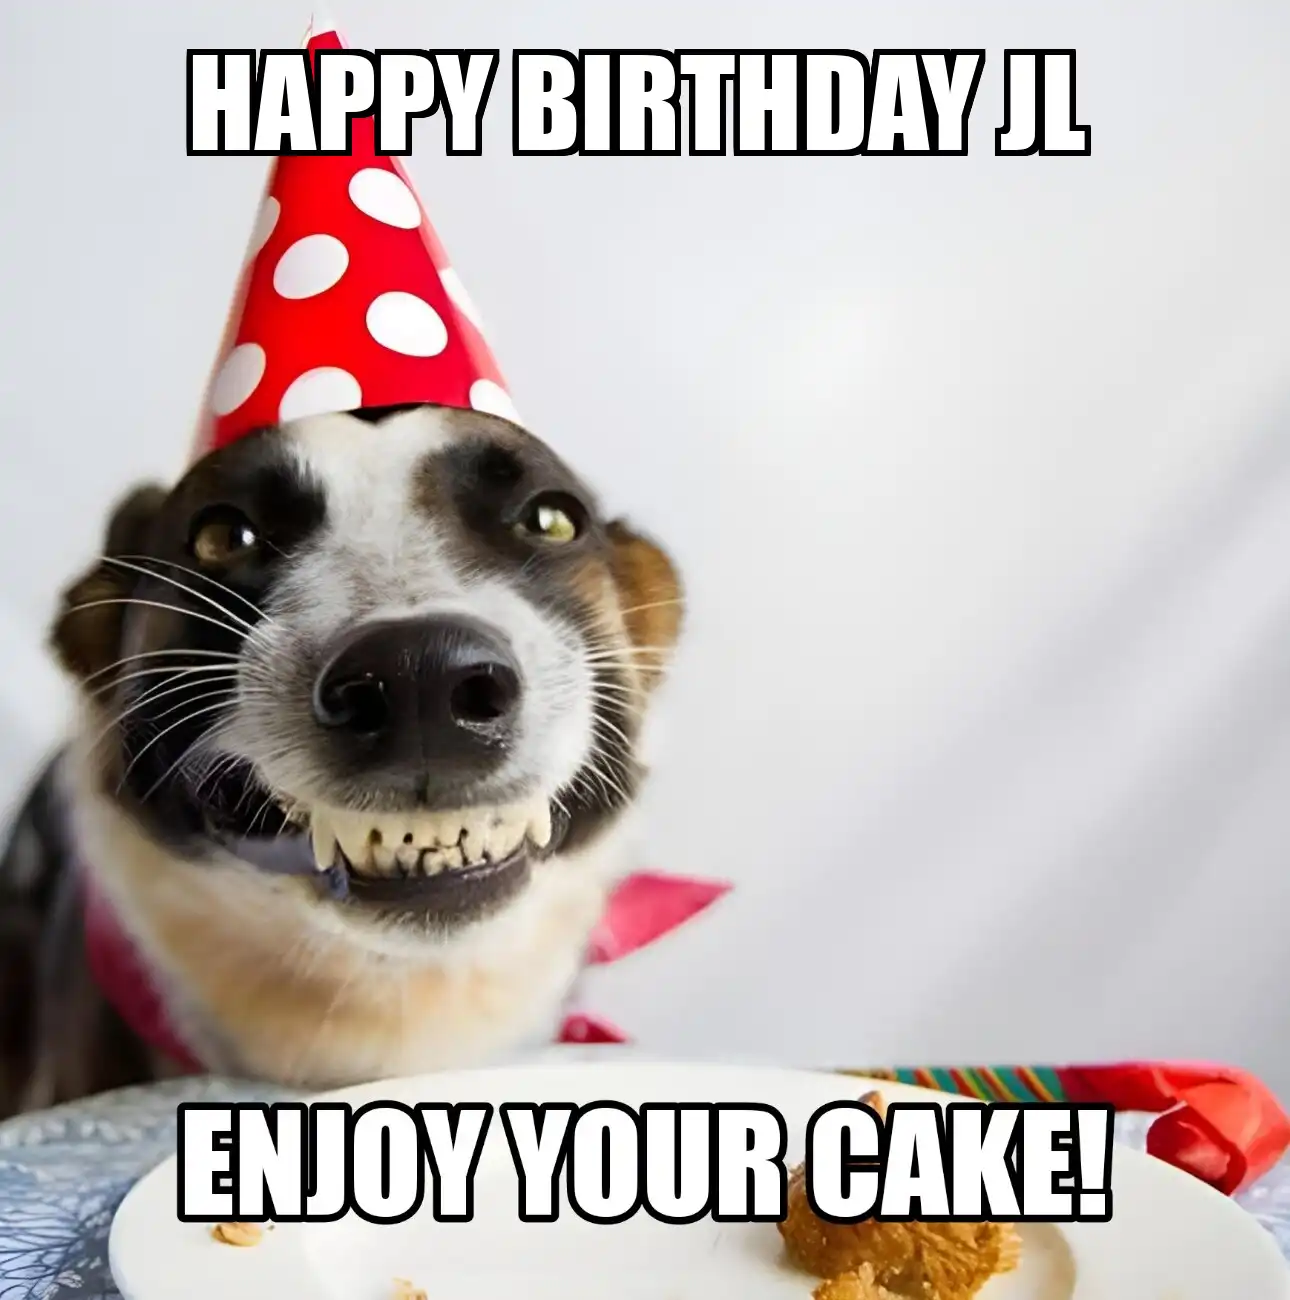 Happy Birthday Jl Enjoy Your Cake Dog Meme